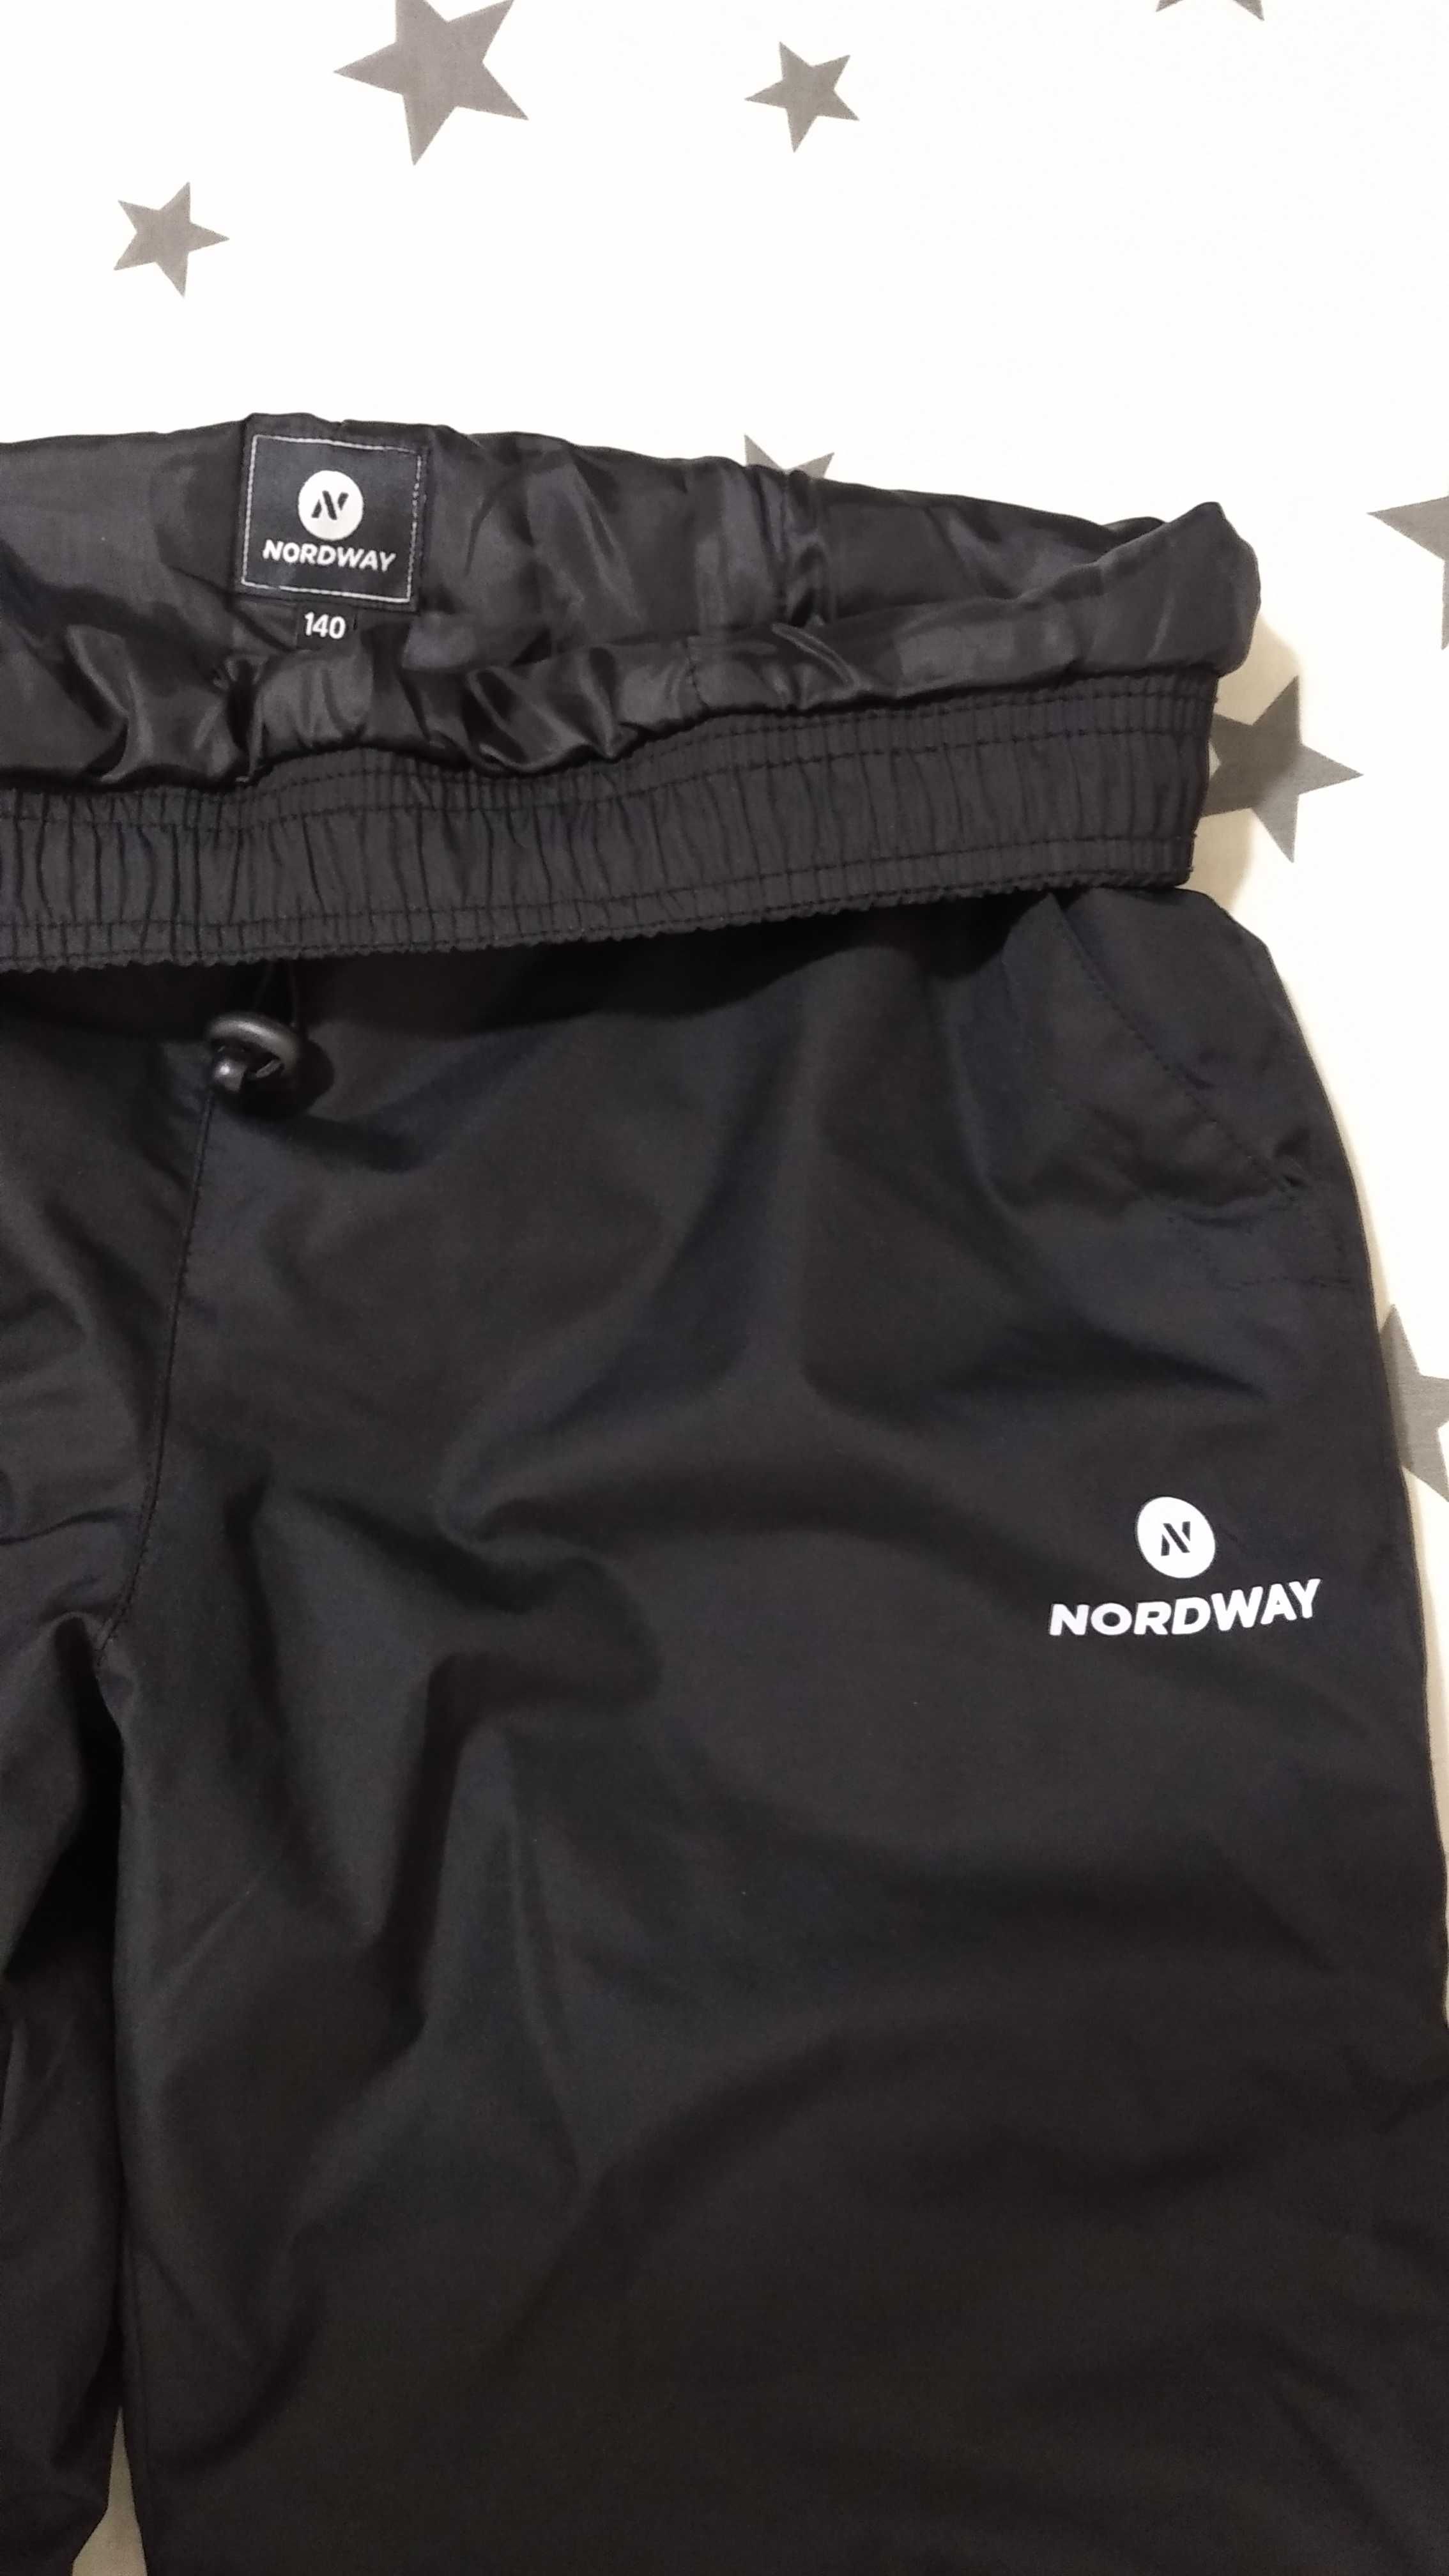 NORDWAY: Дитячі Зимові штани. Розмір - 140 см.